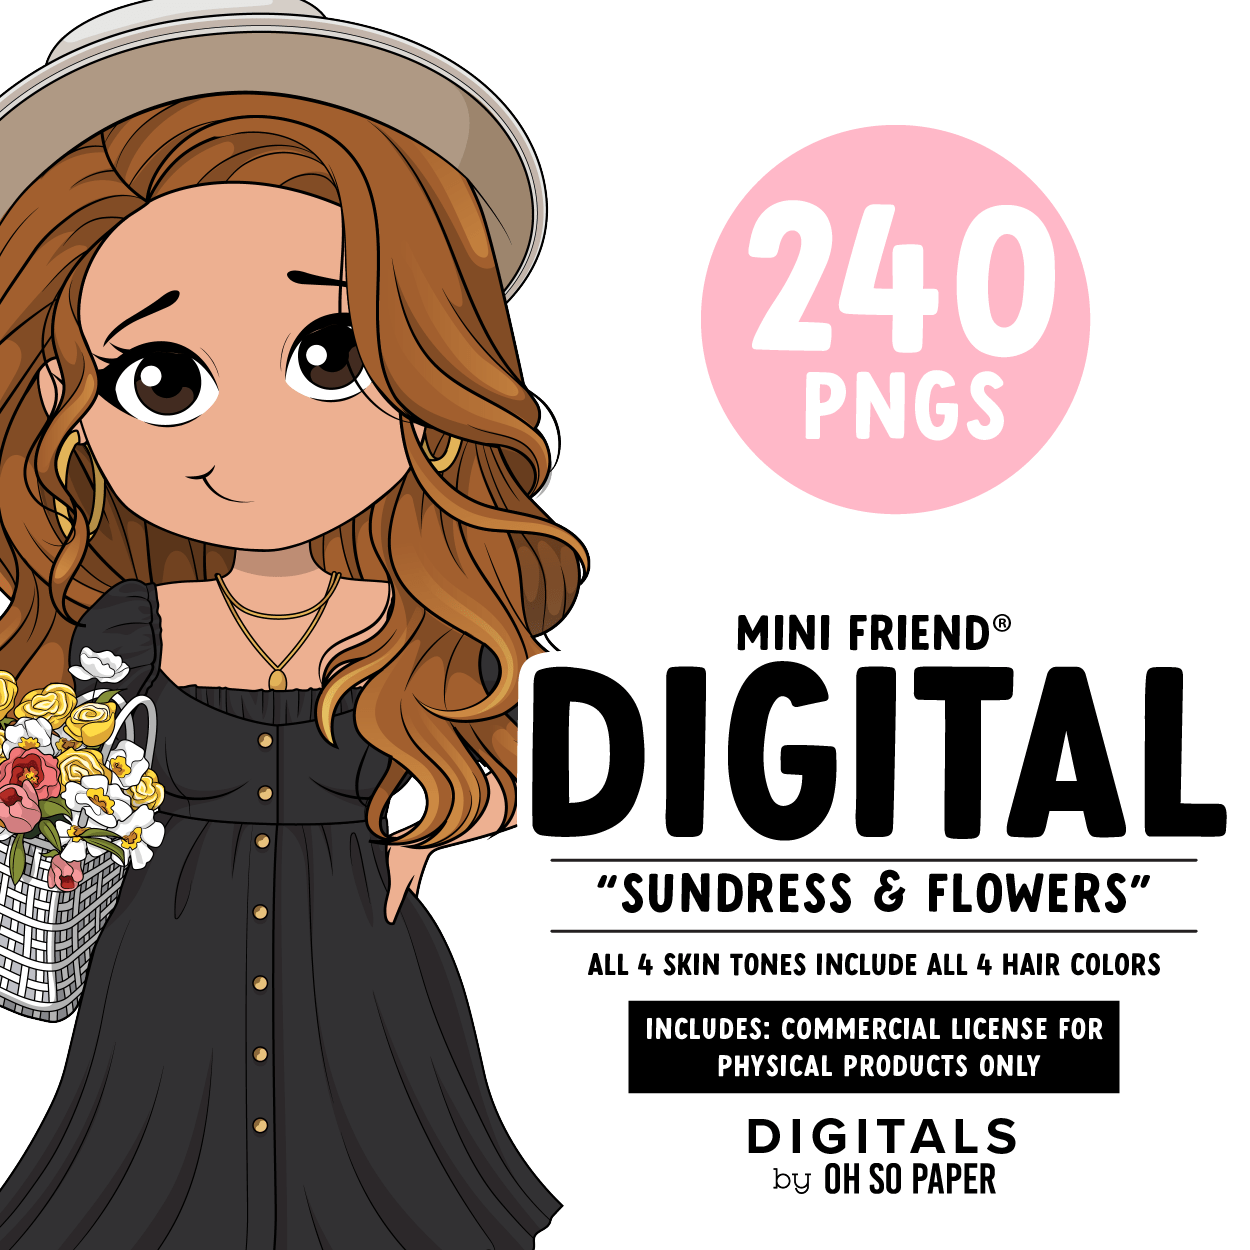 Sundress & Flowers - Mini Friend® Digital Stickers - ohsopaper